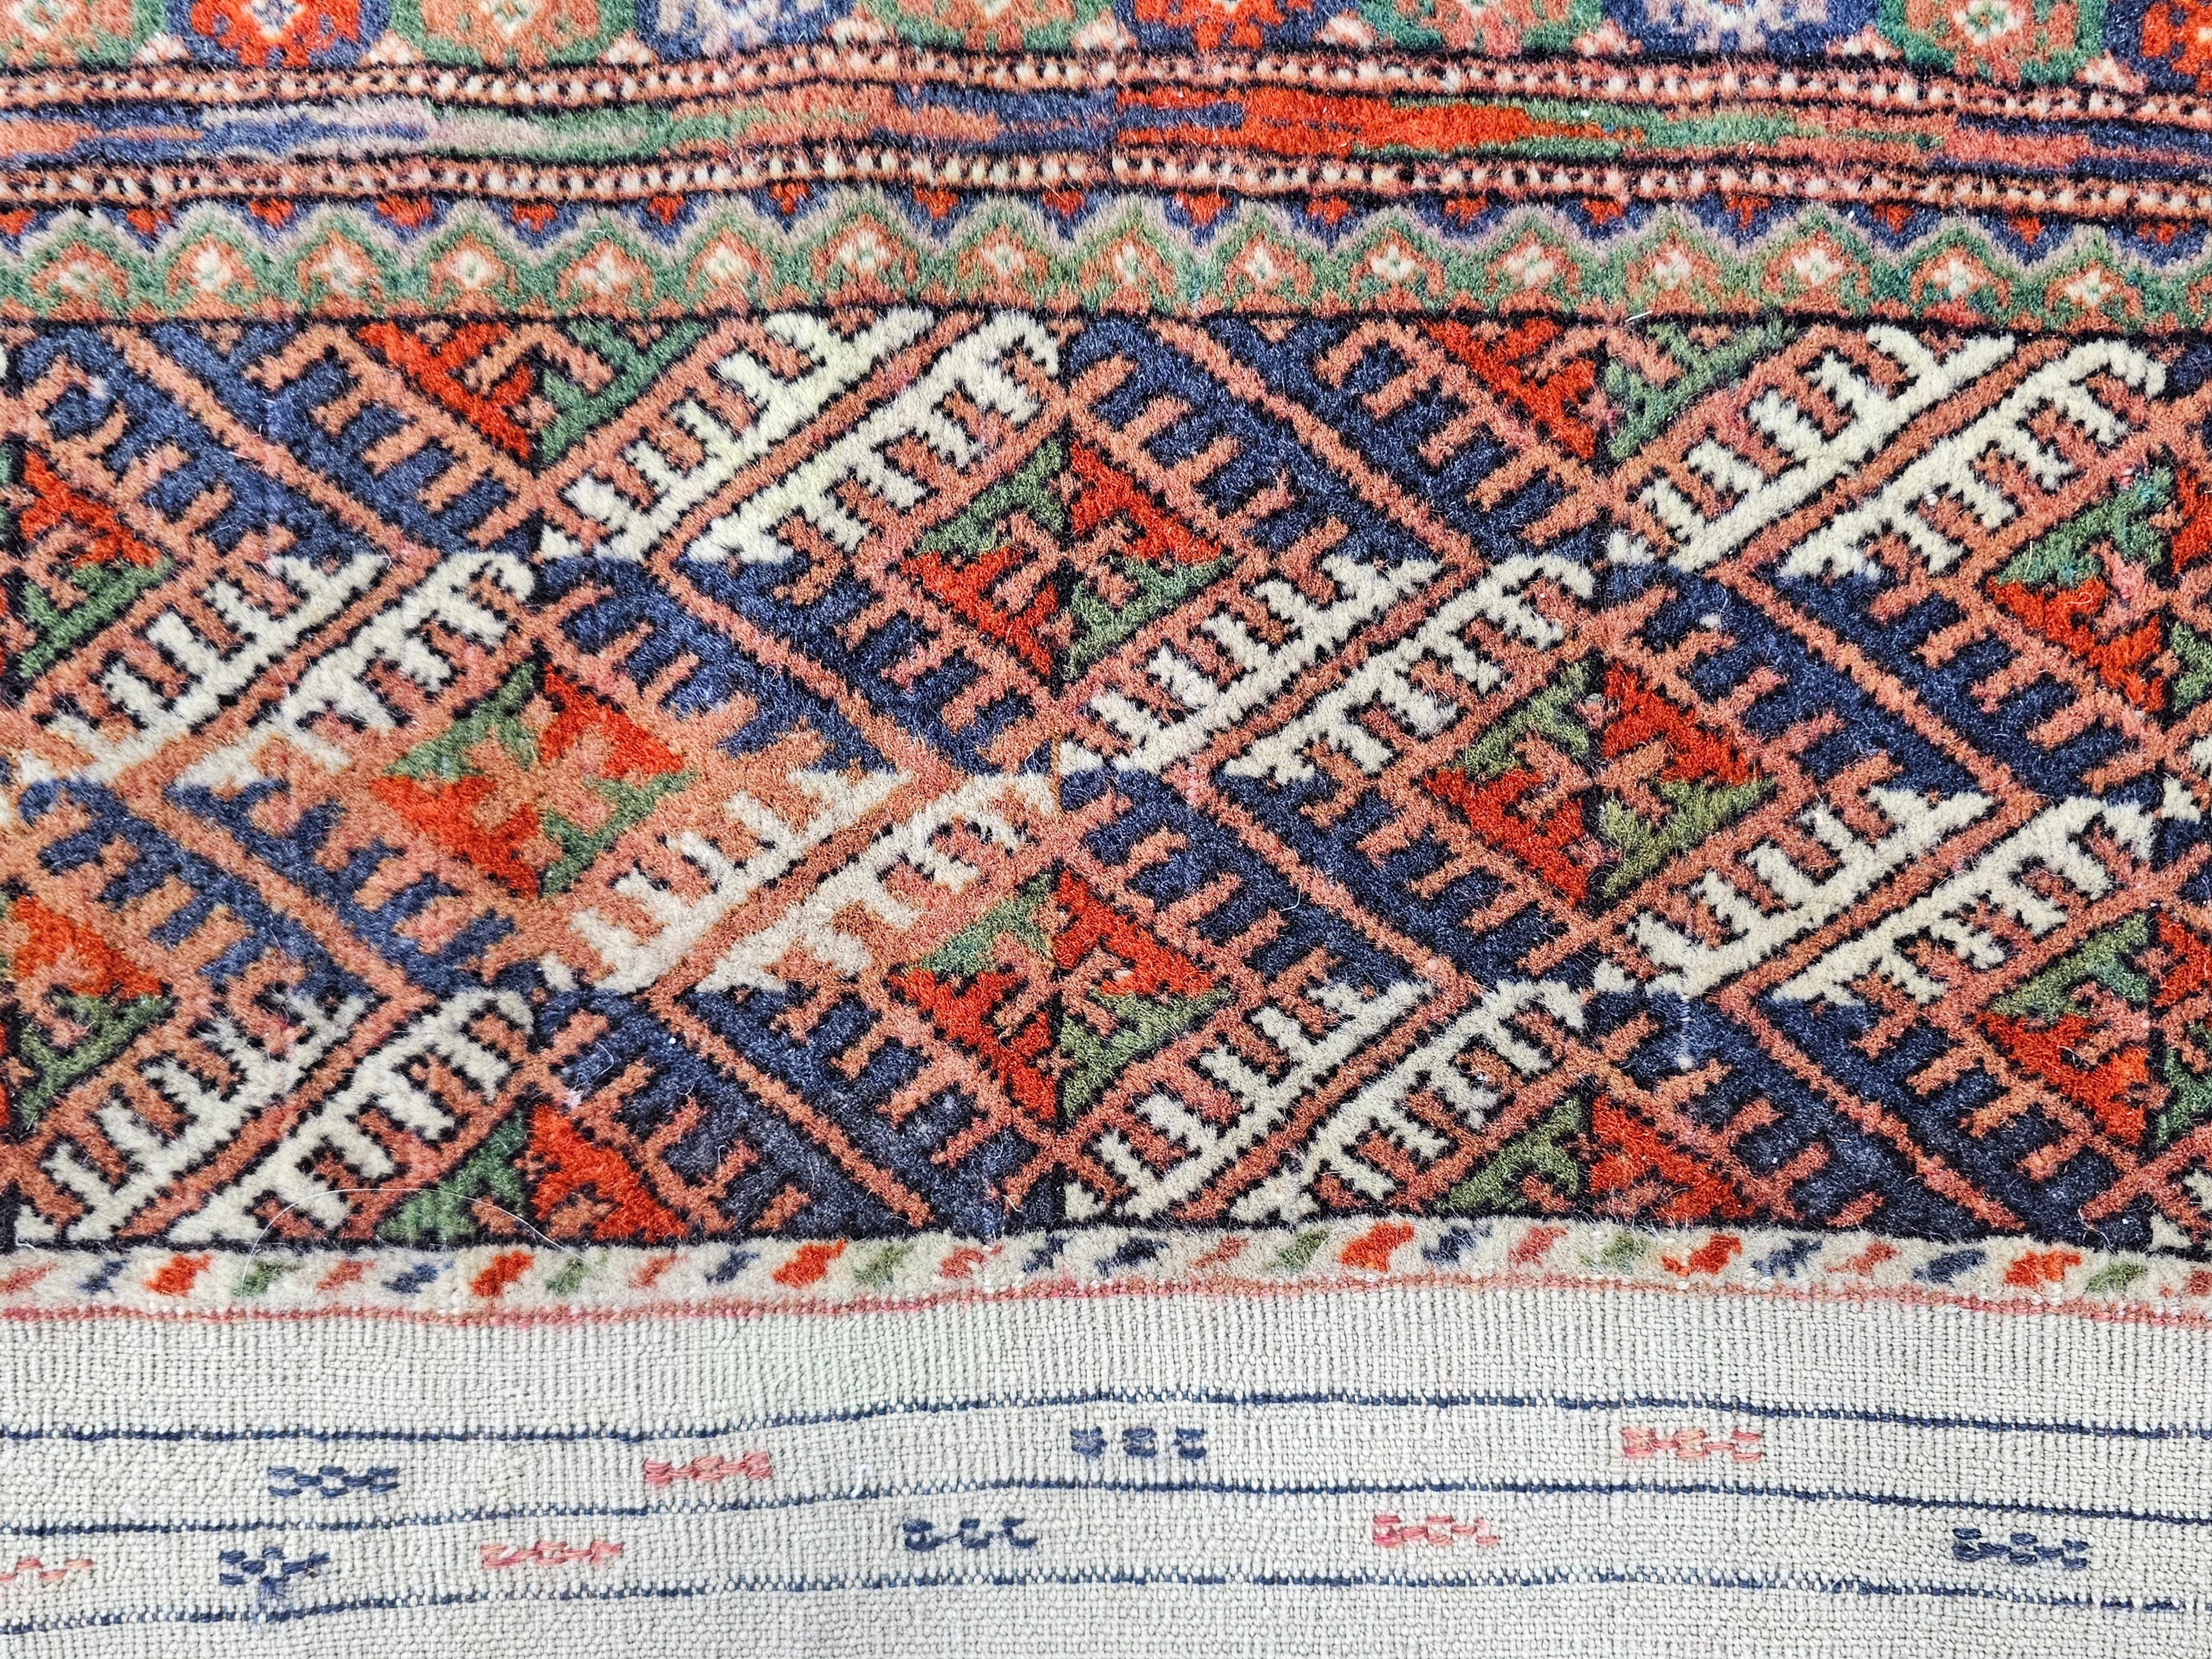 Antique Hand-knotted Turkmen Bokhara Rug in brick orange/red, Turkmenistan 1920s 4